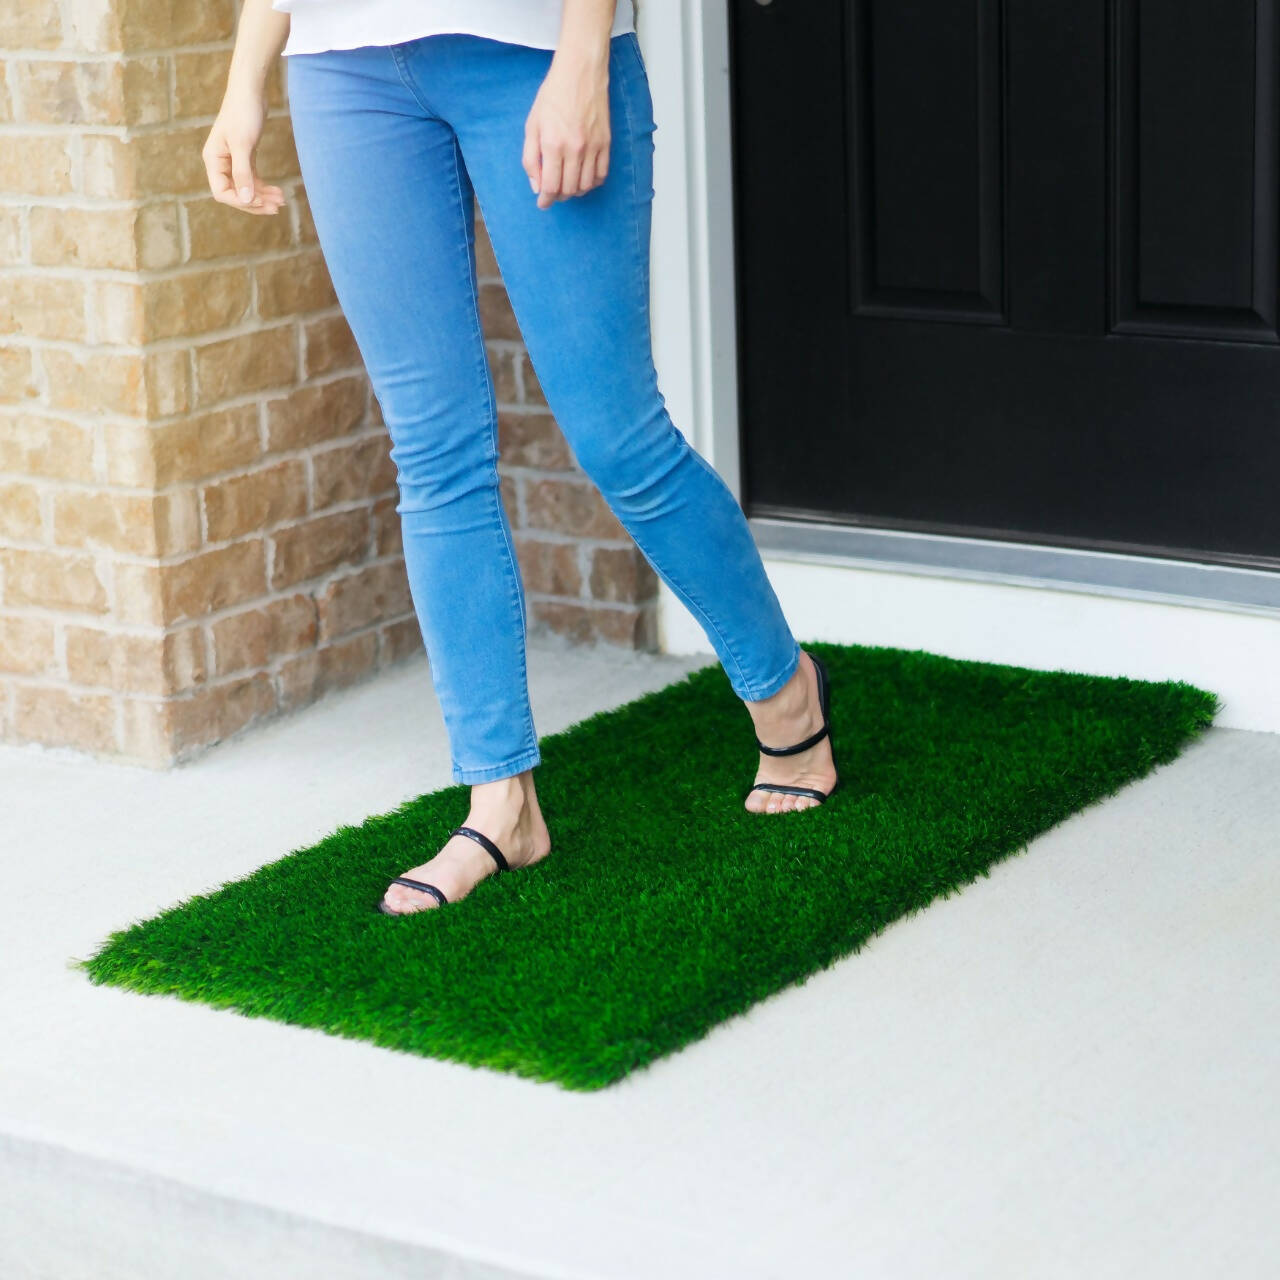 Tijaraat Online Floor Mat / Green Grass Mat / Bath Room Mat / Floor Mat / Entrance Mat / PVC Rugs Door Mat / Multi Purpose Artificial Green Grass Rug- 2FT BY 4FT20Mm